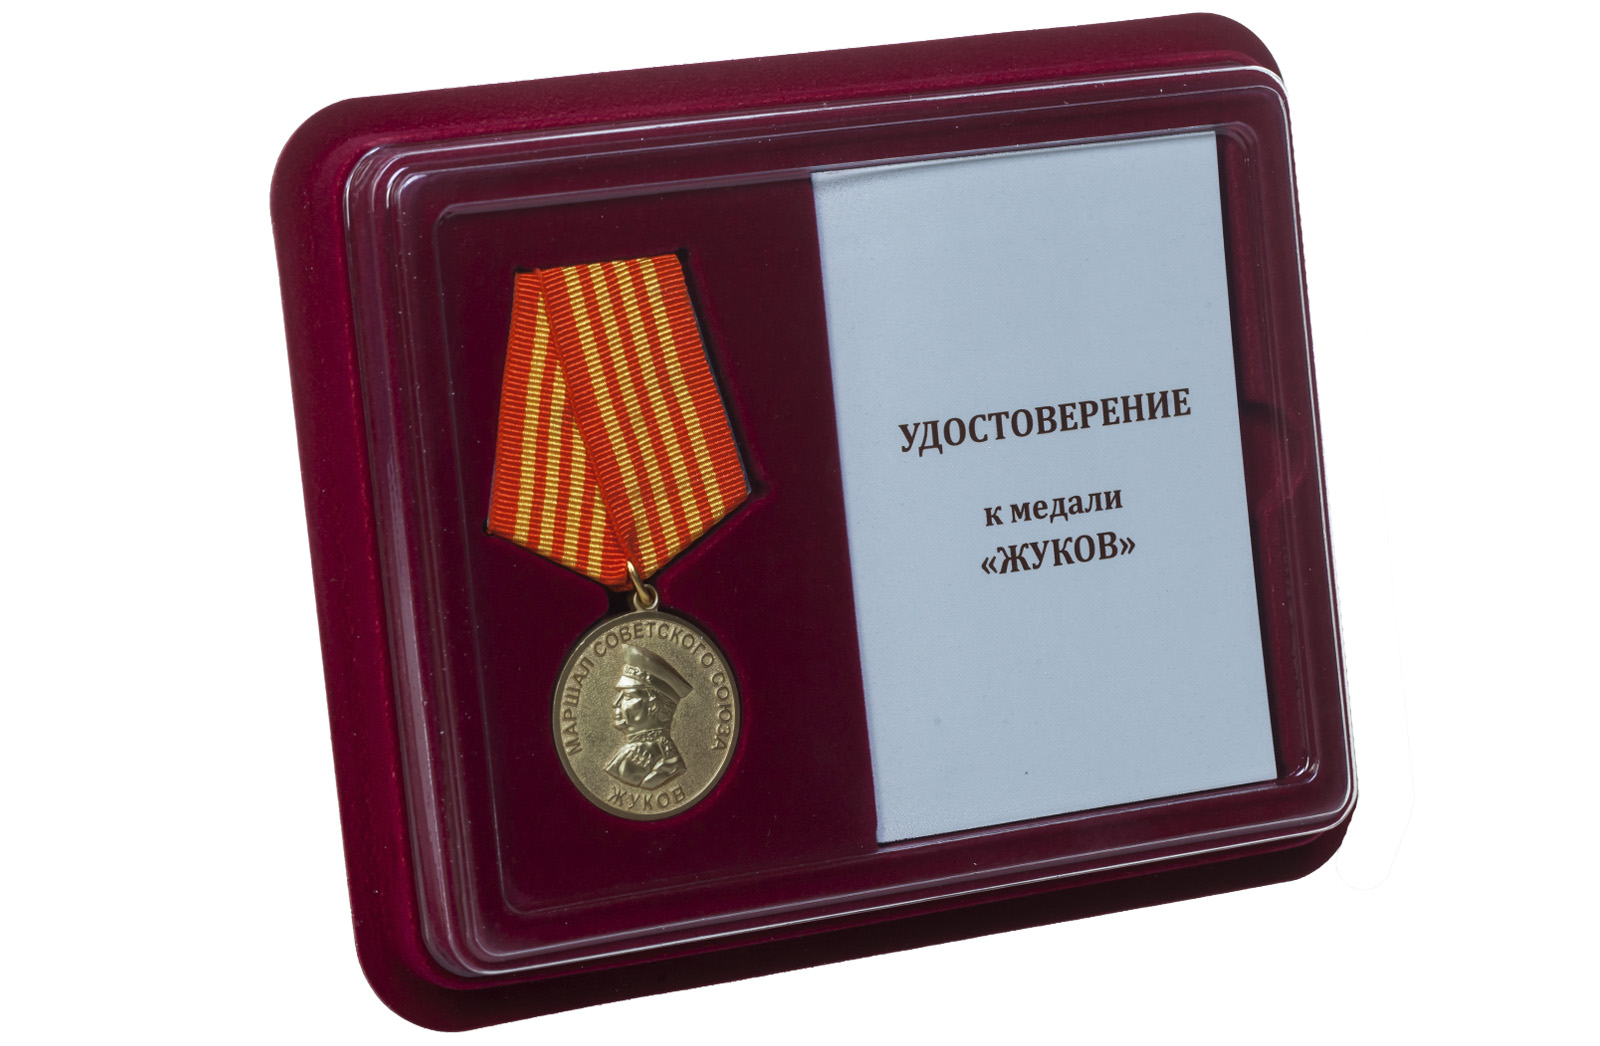 Медаль "Маршал Жуков" 